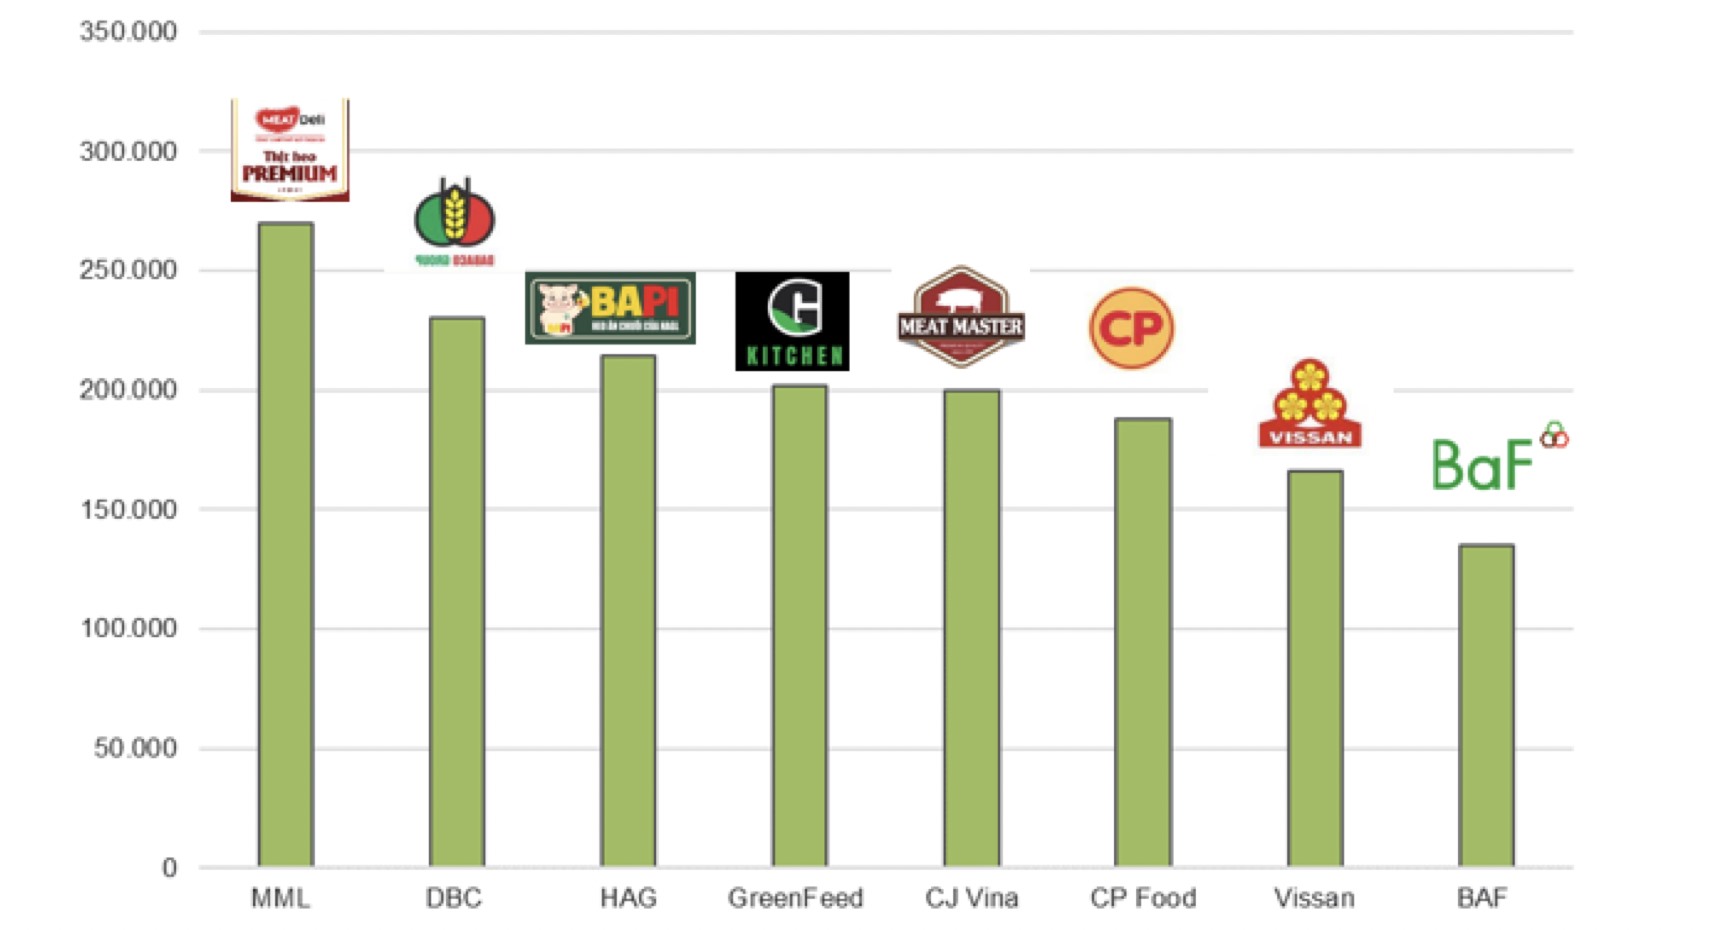 So sánh giá thịt (ba chỉ) thương hiệu trên thị trường (đơn vị: đồng/kg). Ảnh: VNDirect Research